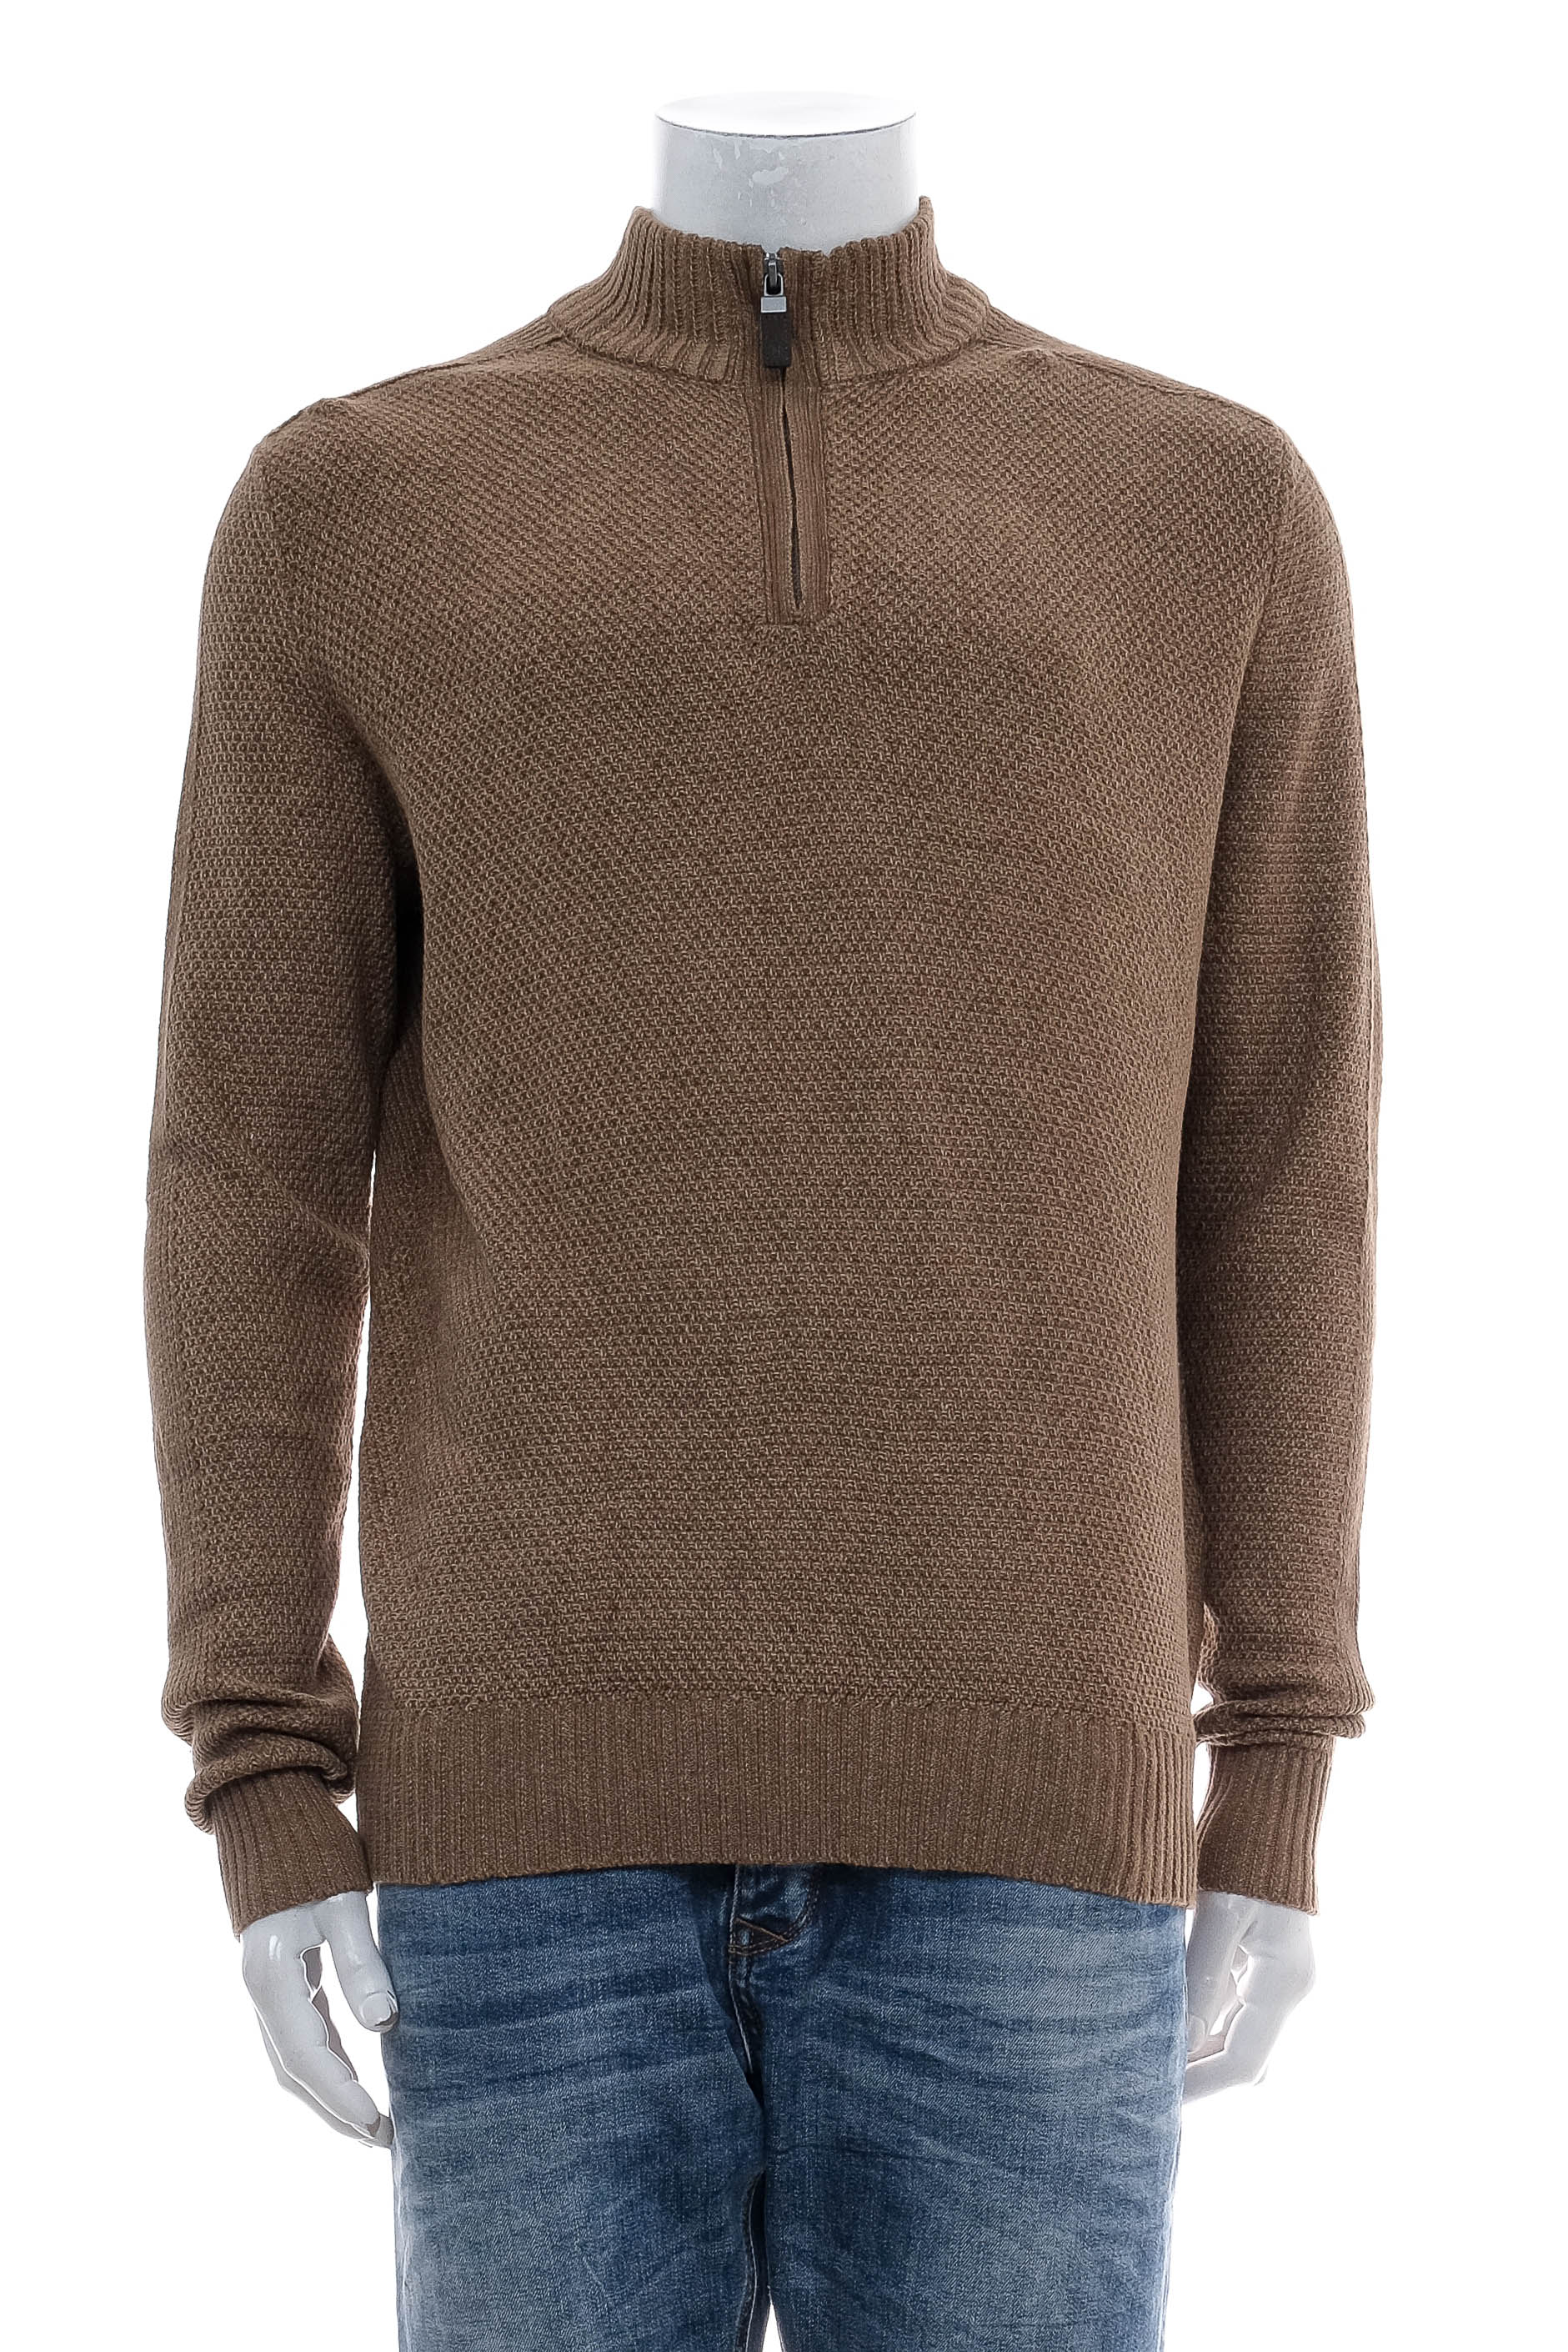 Men's sweater - G.H. Bass & Co. - 0